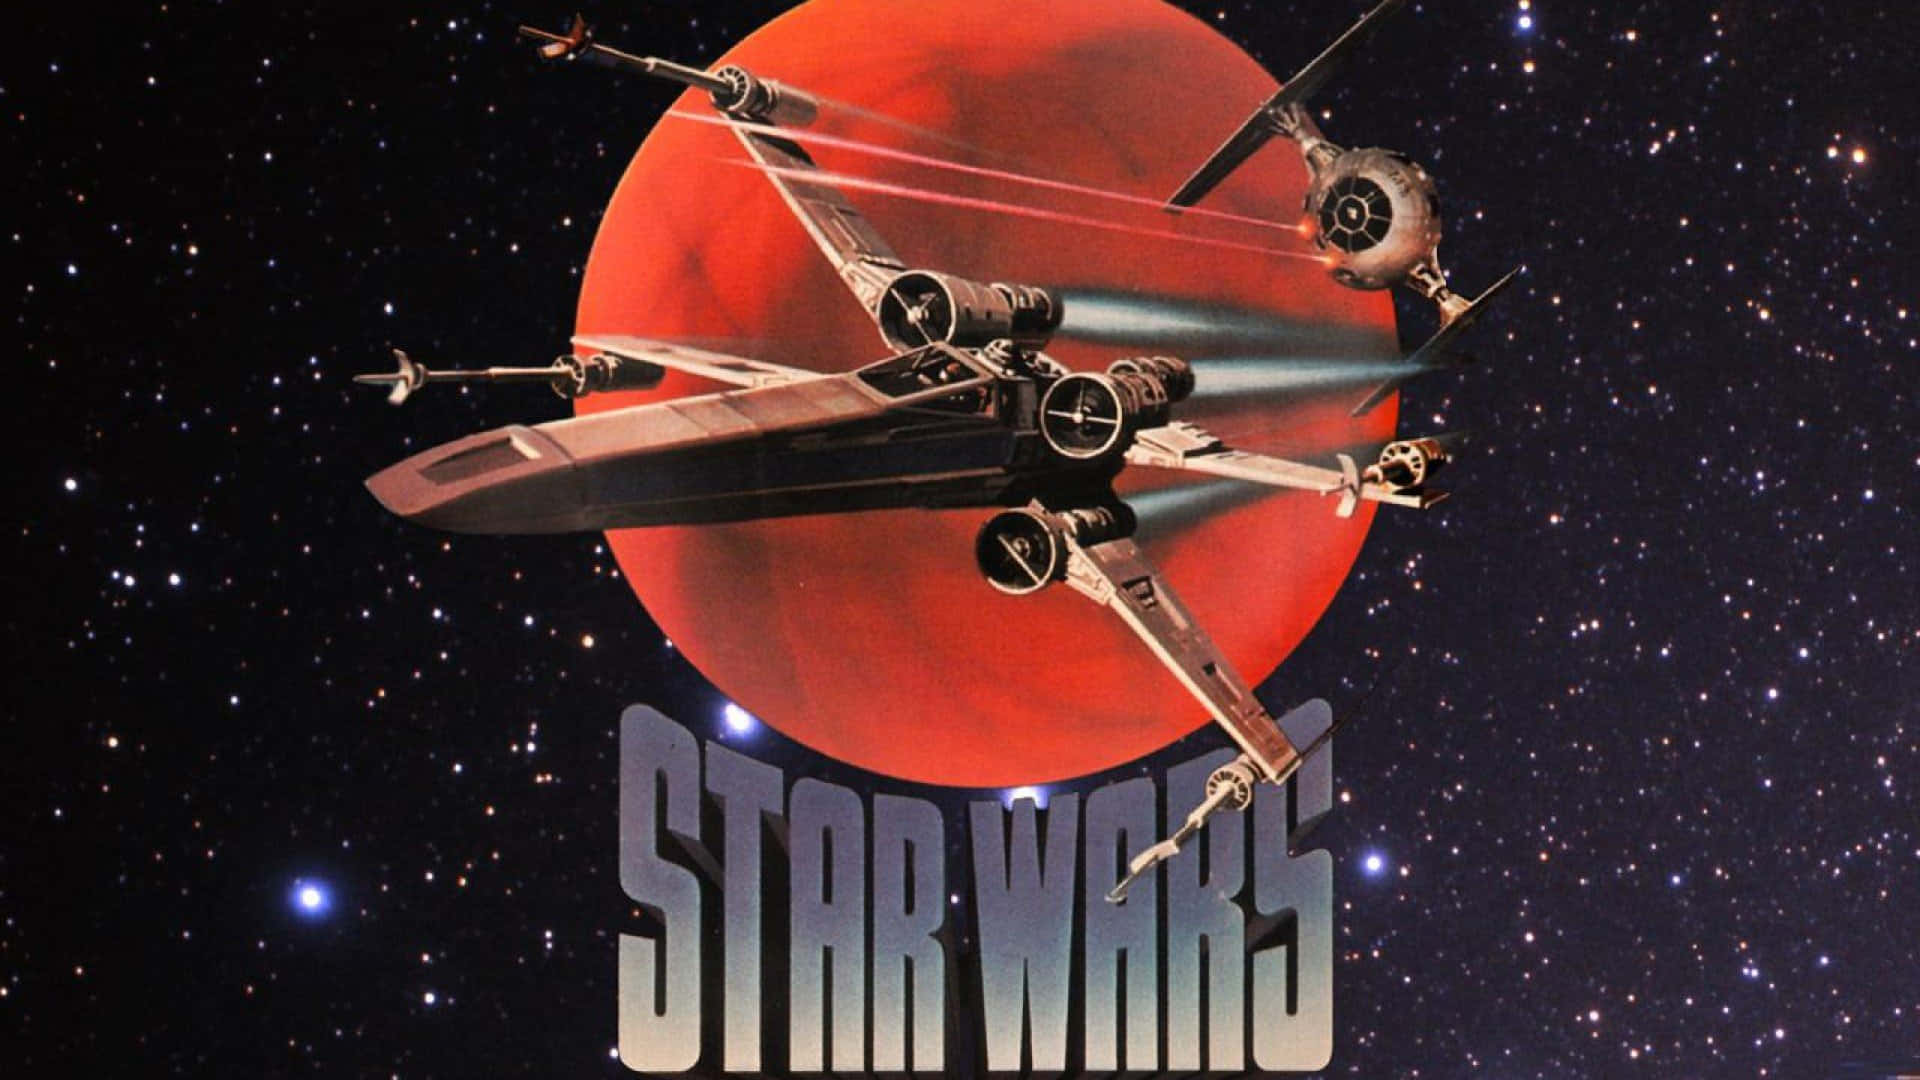 Erhebedich In Den Kampf Mit Einem X-wing In Star Wars Wallpaper